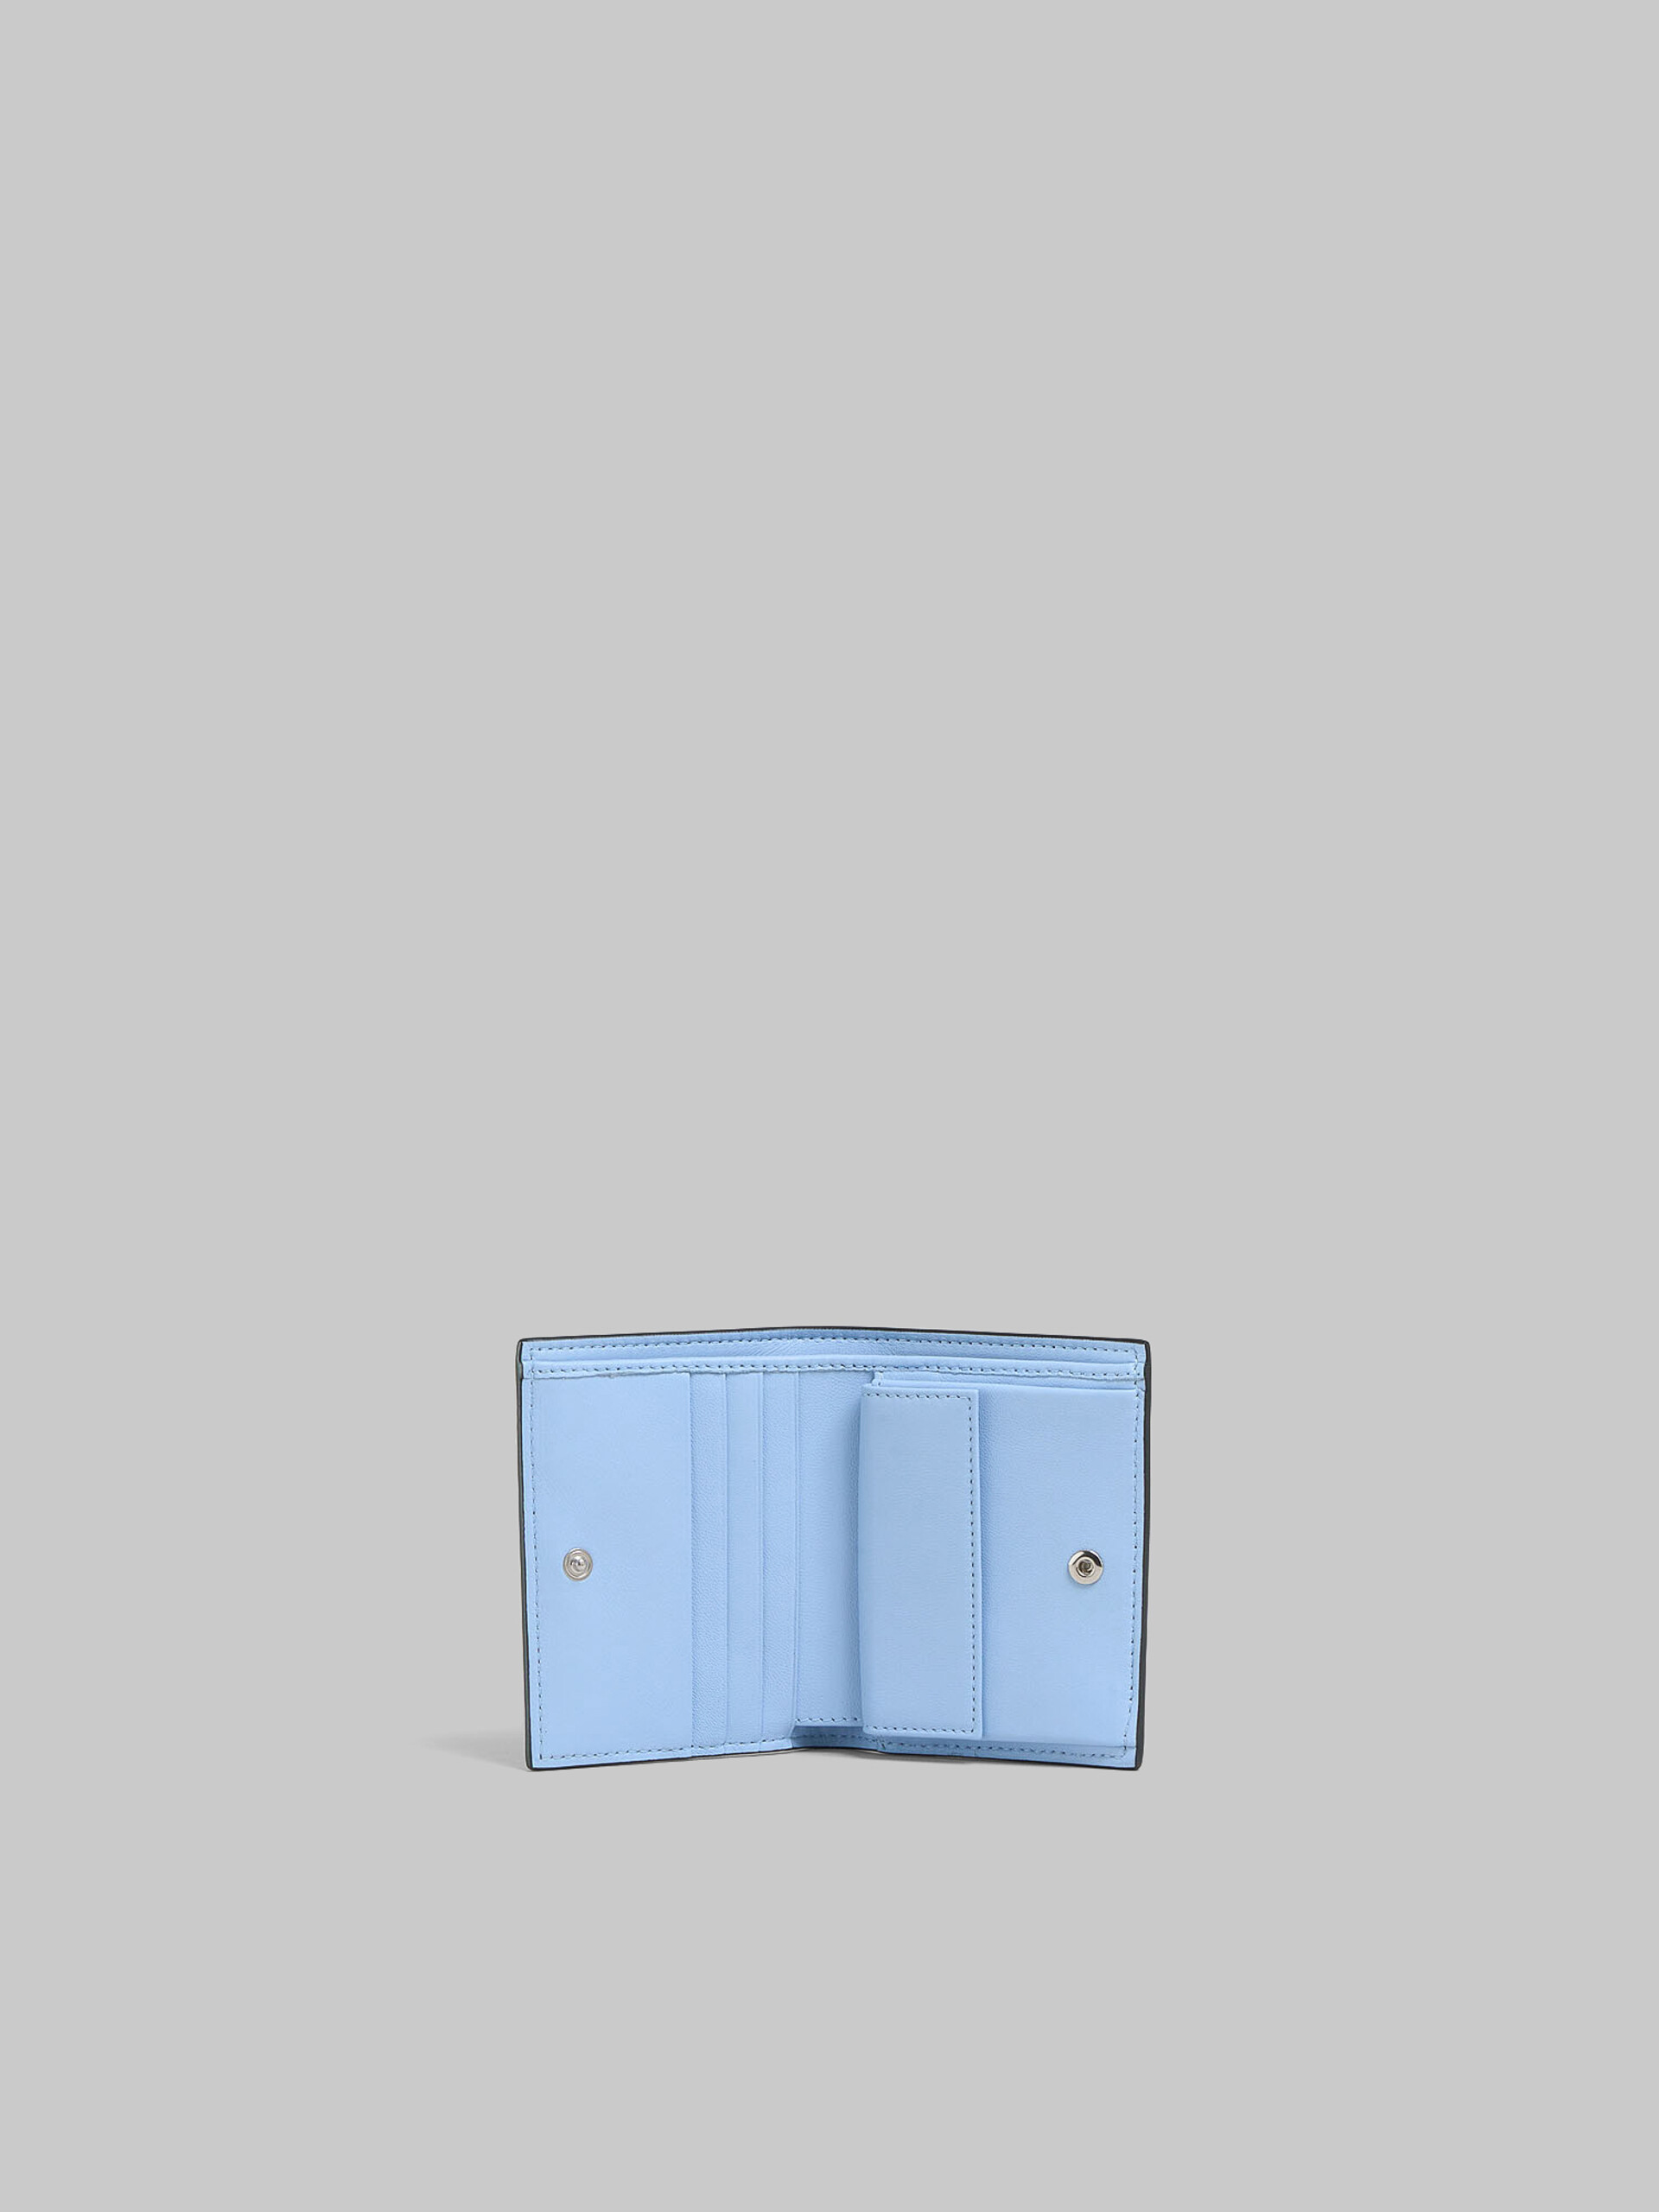 ブルー レザー製 二つ折りウォレット、レイズド マルニロゴ - 財布 - Image 2